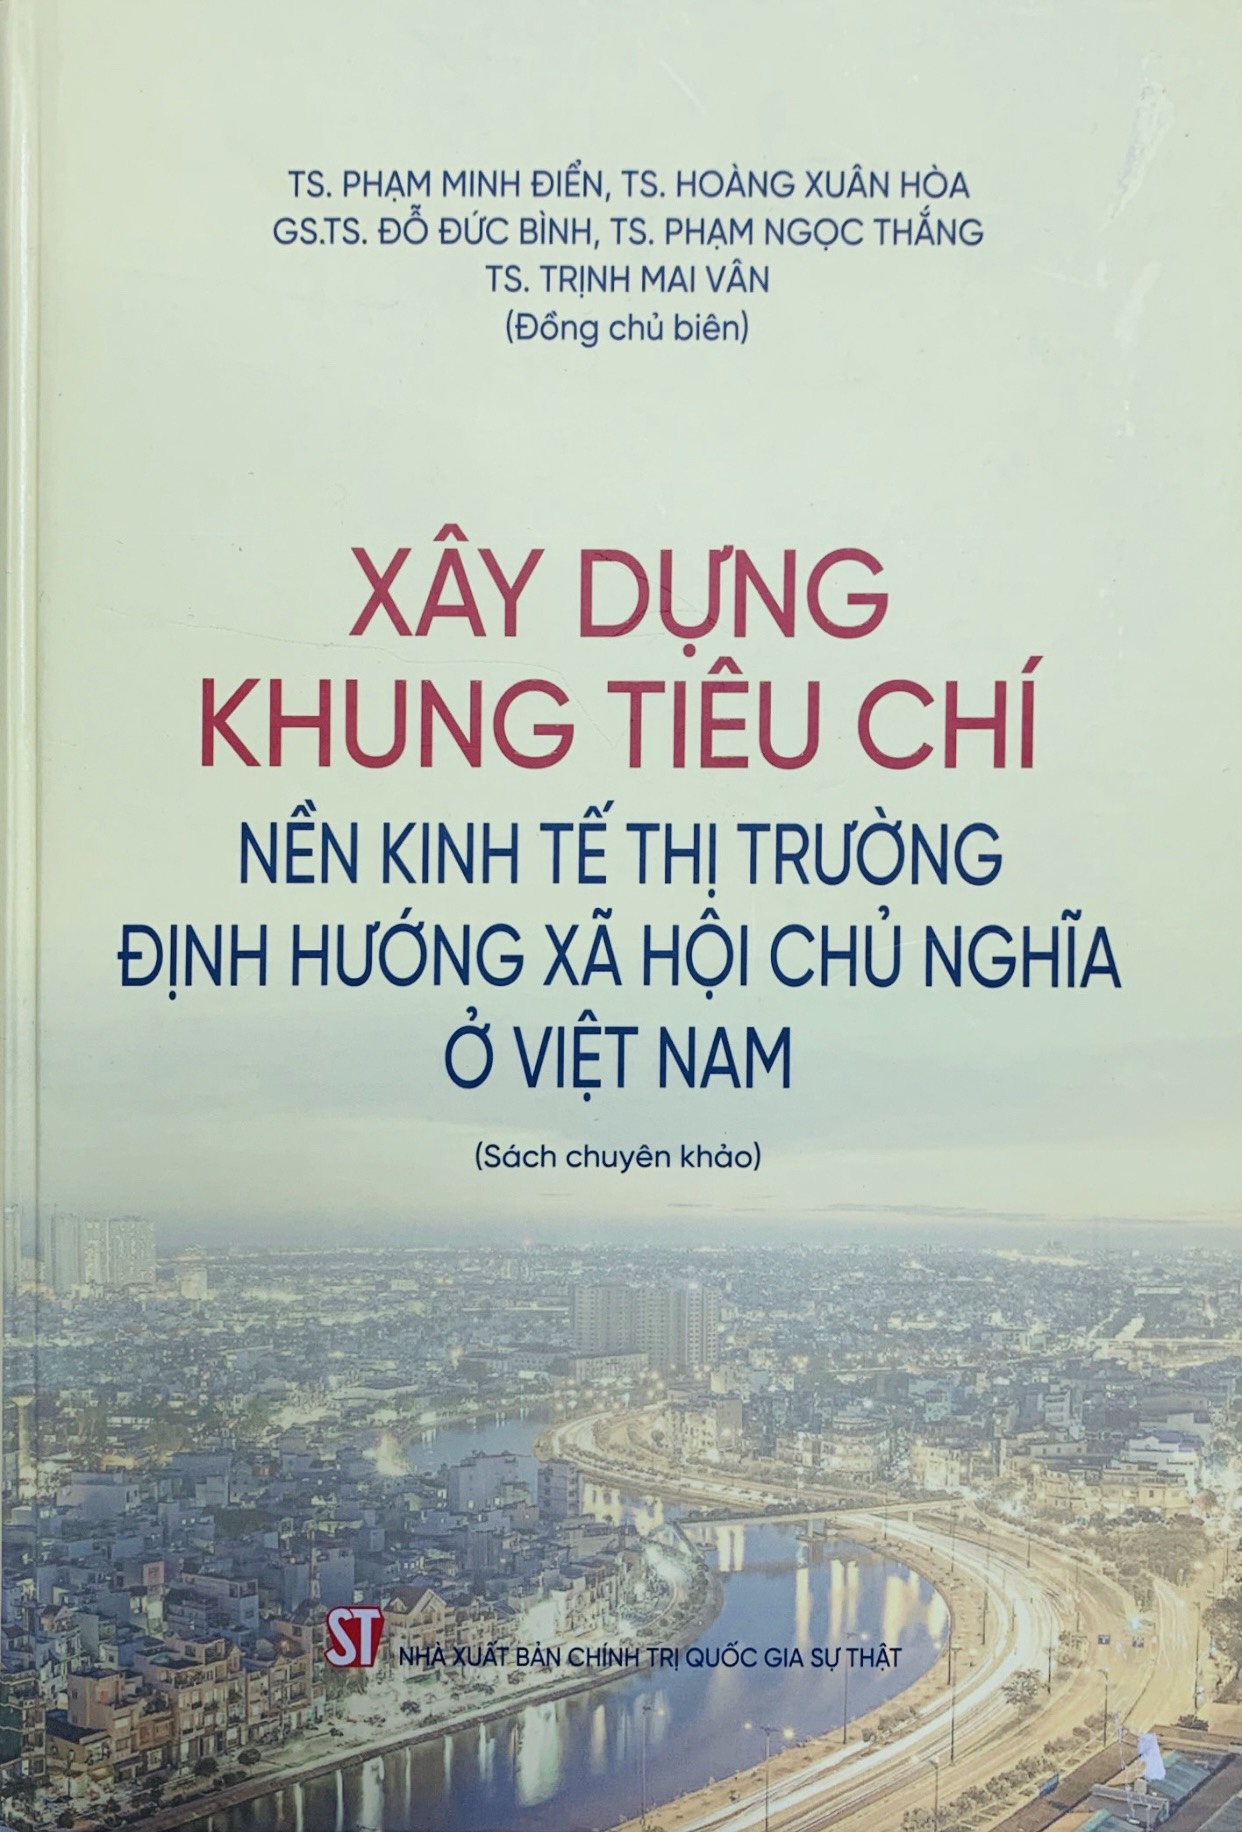 Xây dựng khung tiêu chí nền kinh tế thị trường định hướng xã hội chủ nghĩa ở Việt Nam (Sách chuyên khảo)